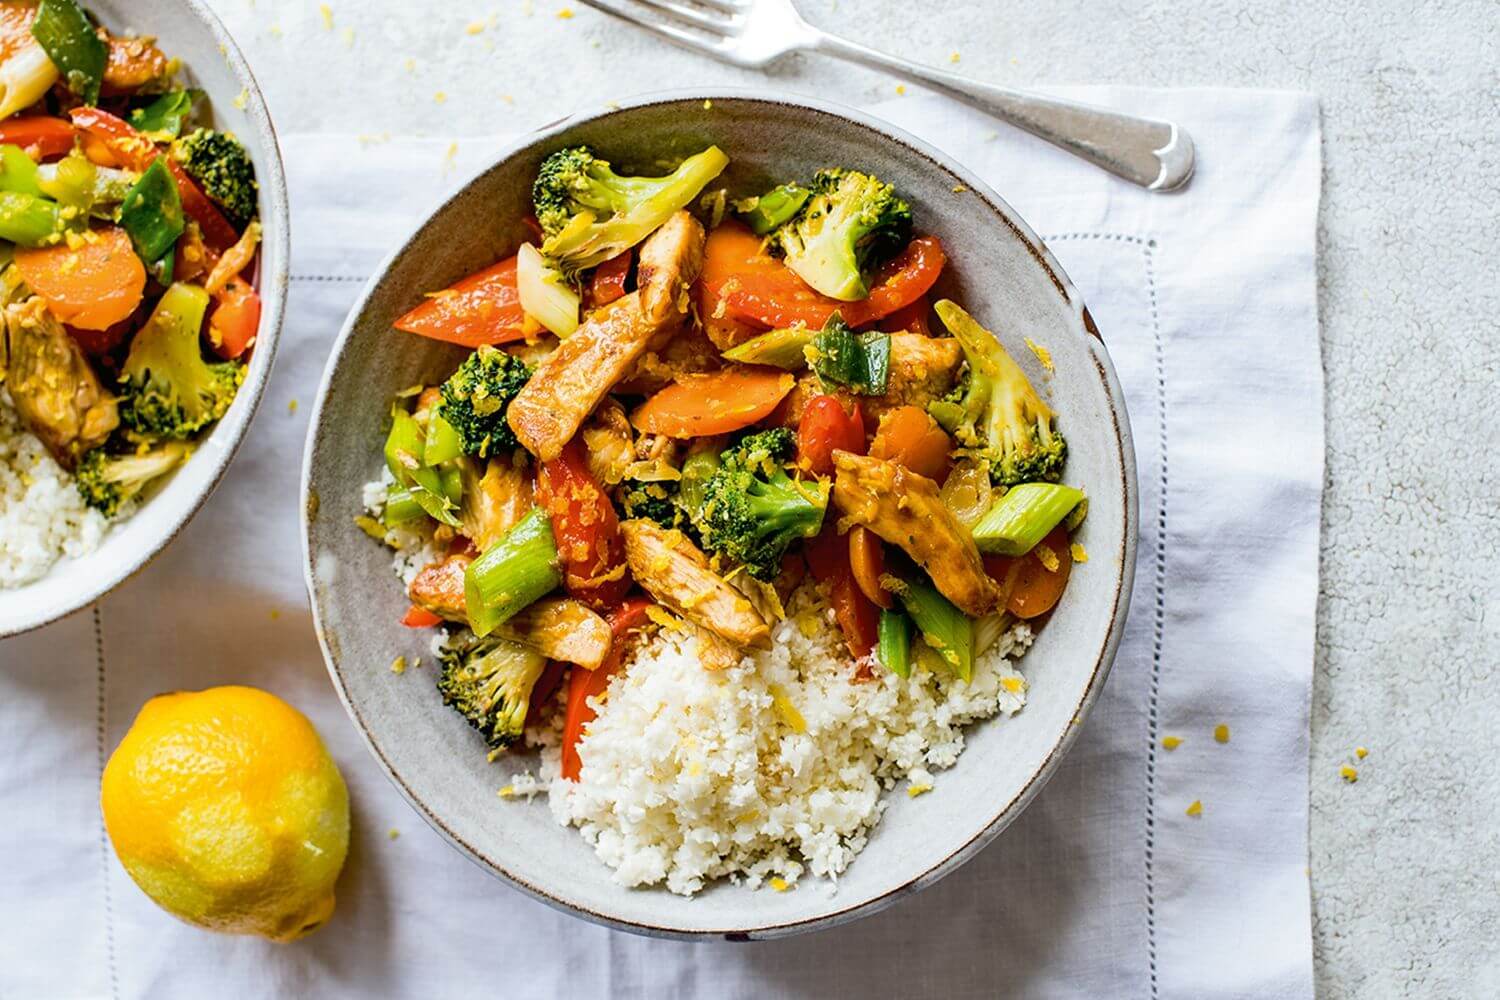 Zdrav obrok v krožniku, barvna zelenjava in riž